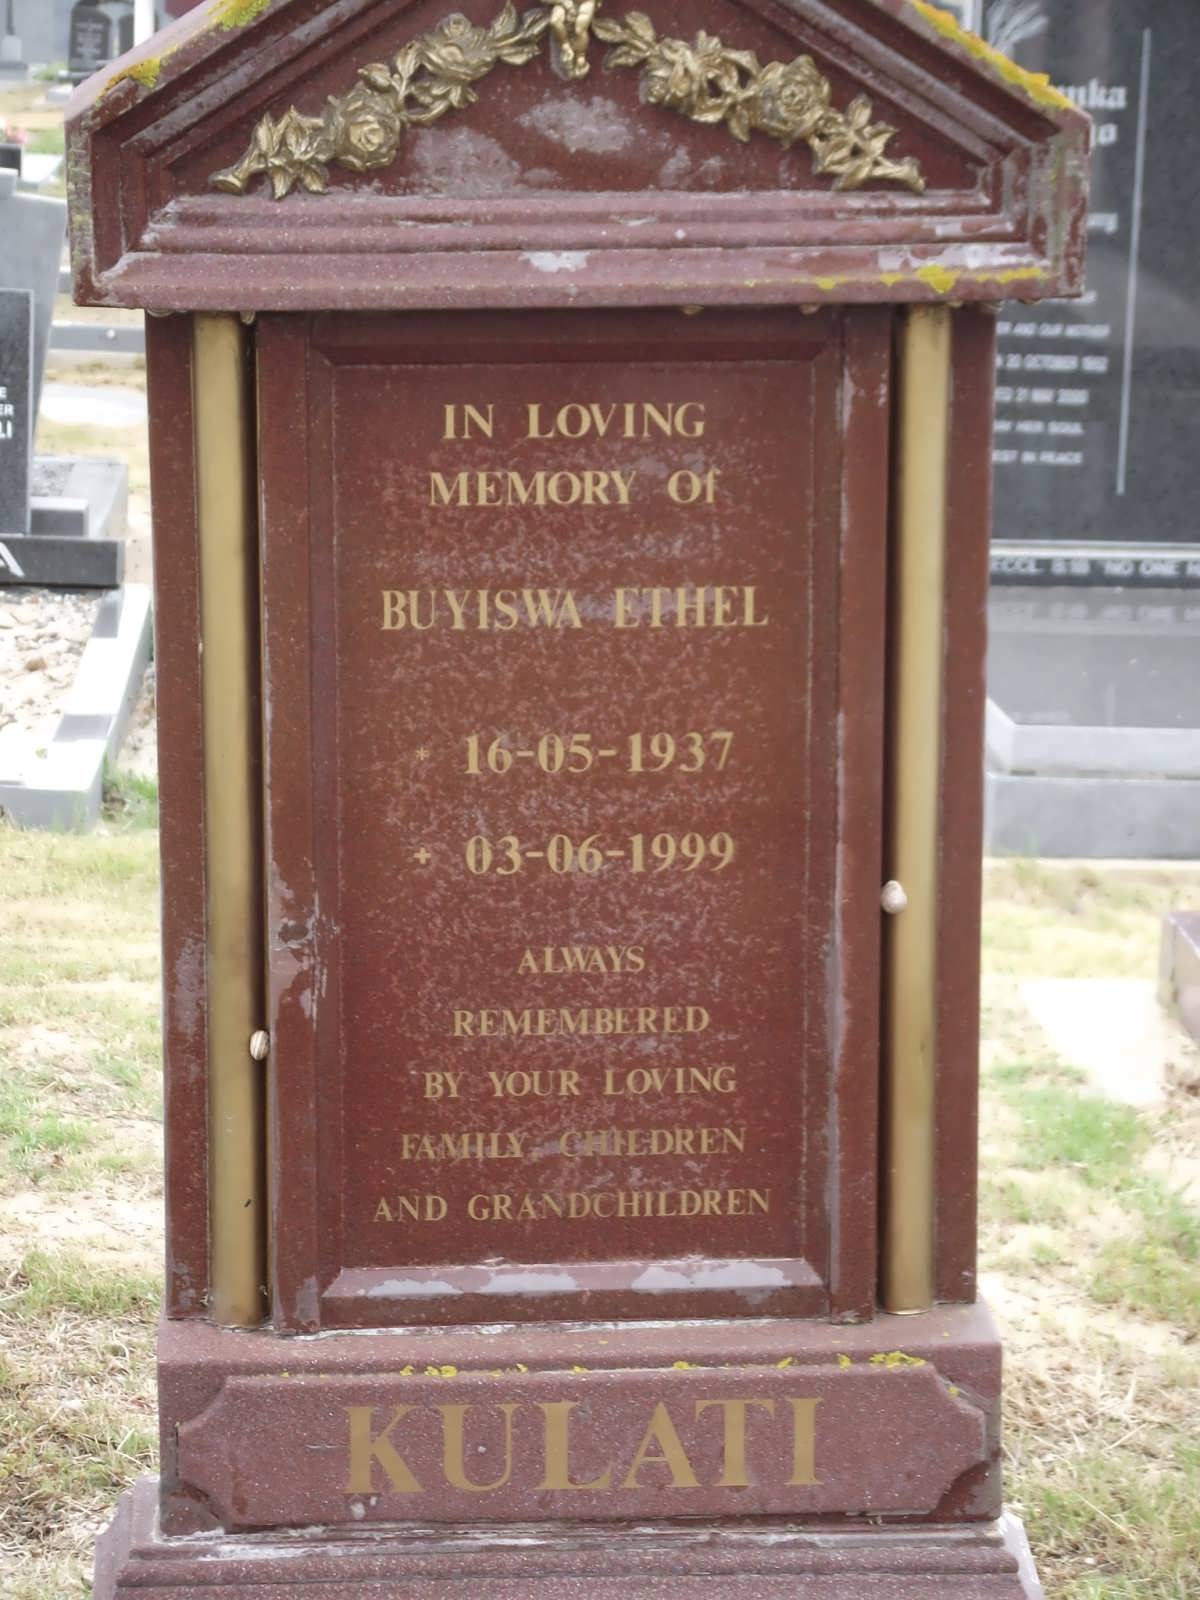 KULATI Buyiswa Ethel 1937-1999